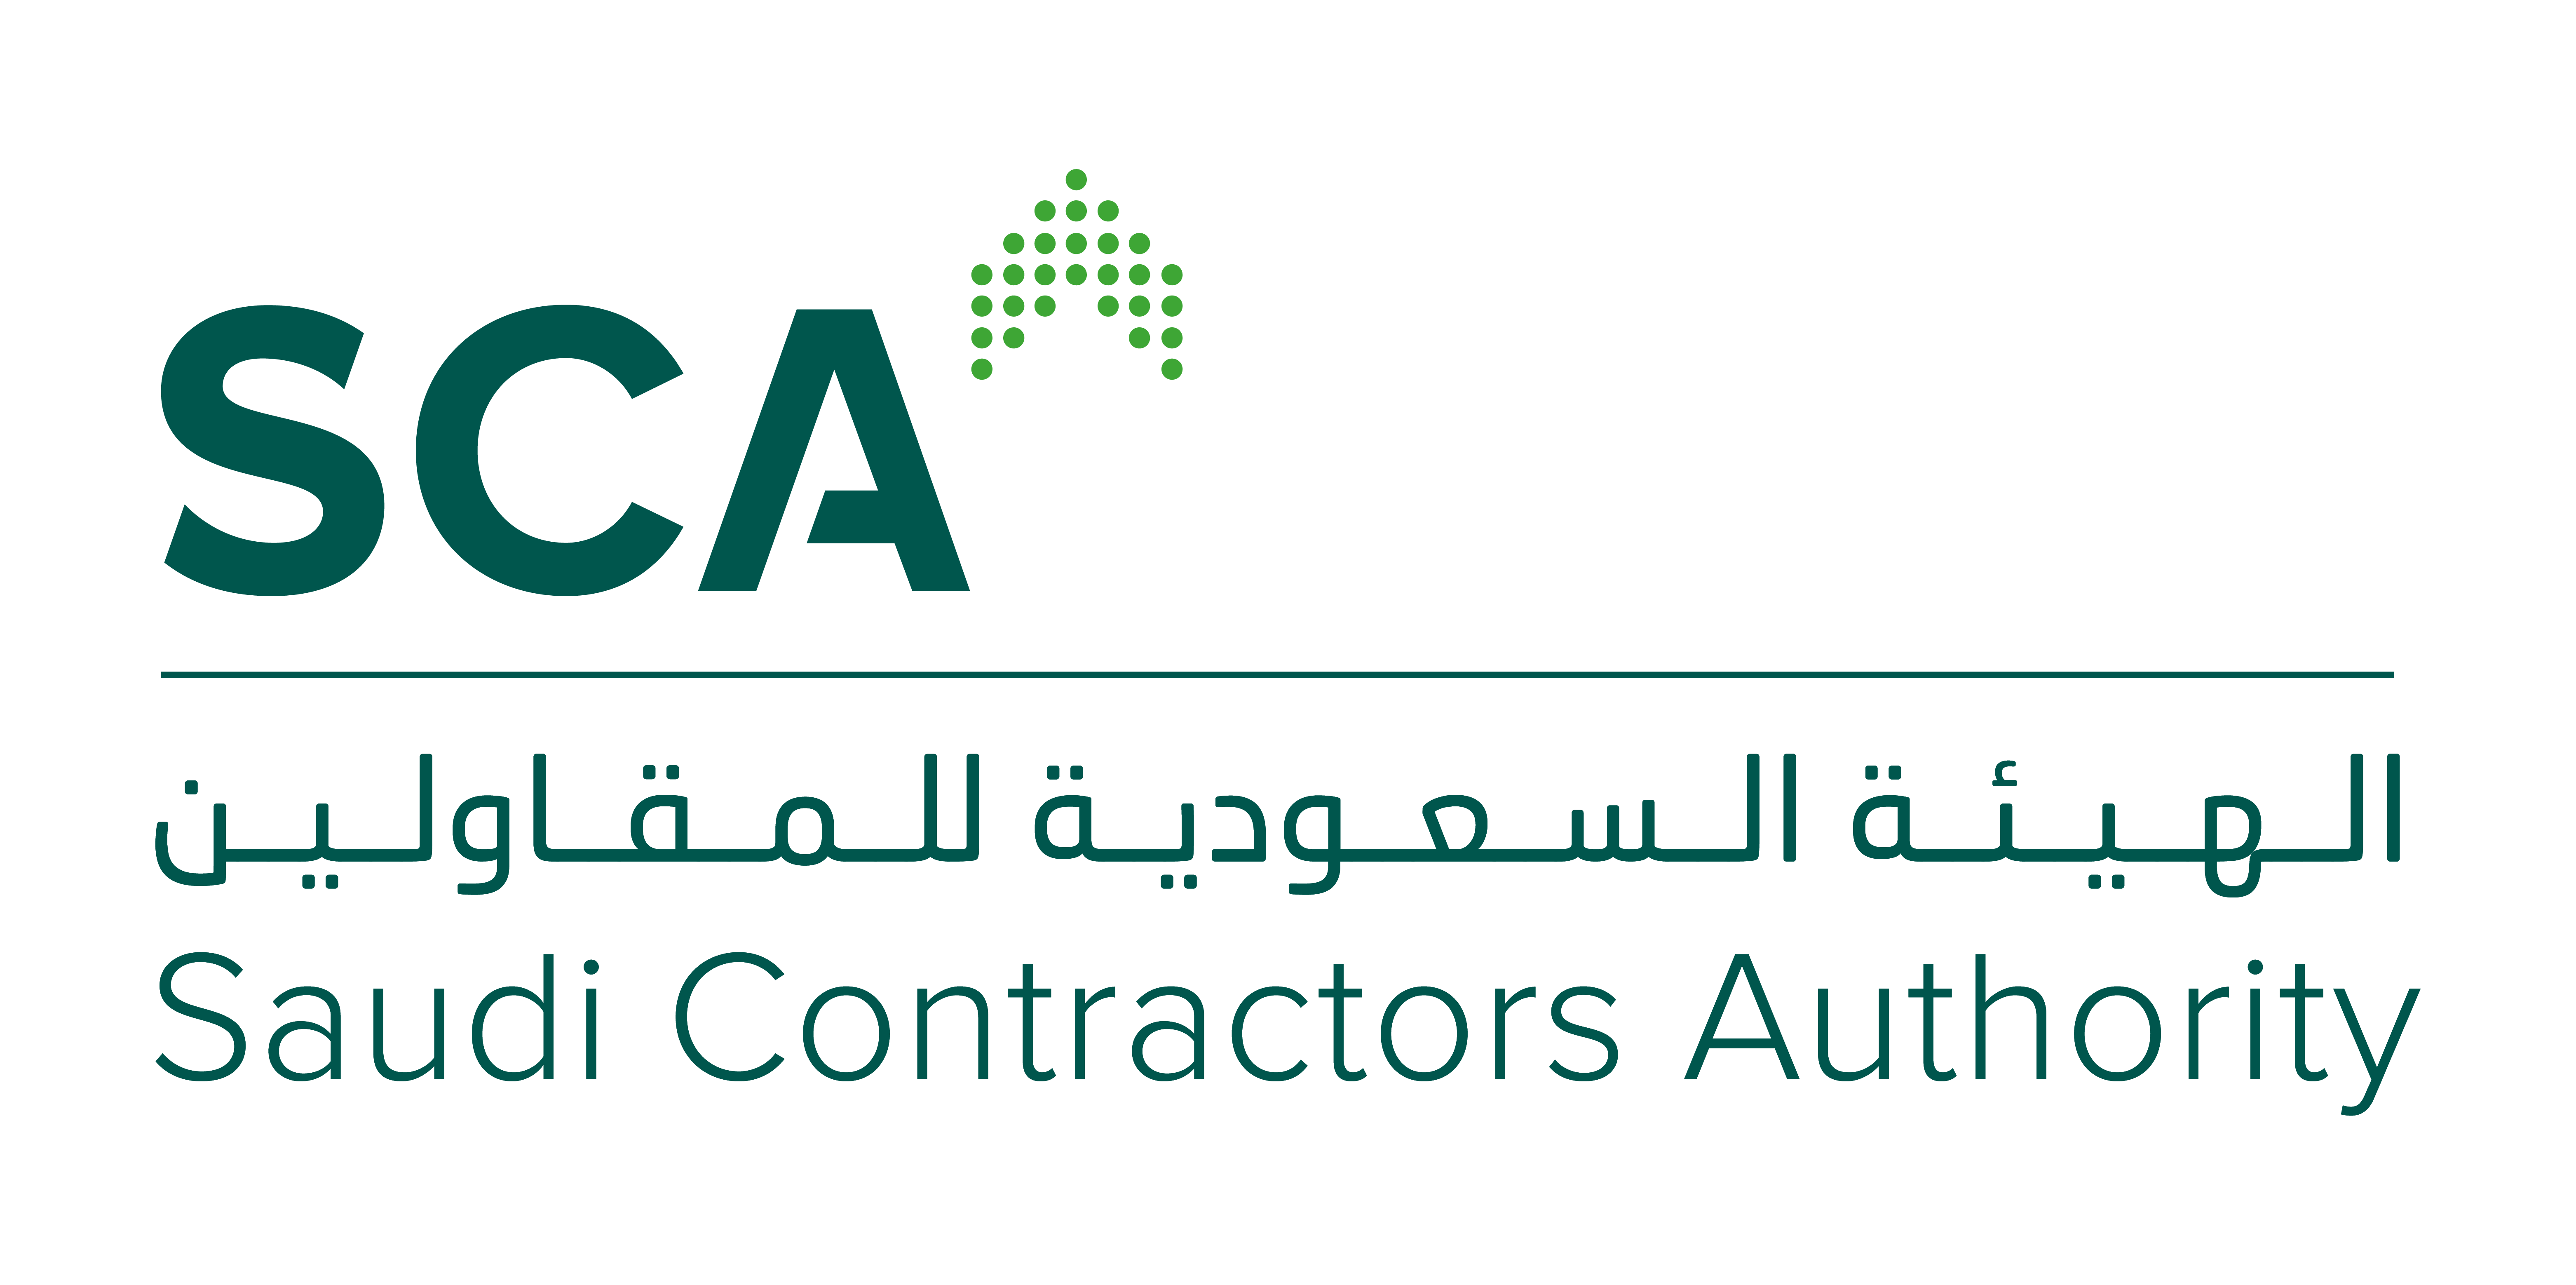 Saudi Contractors Authority